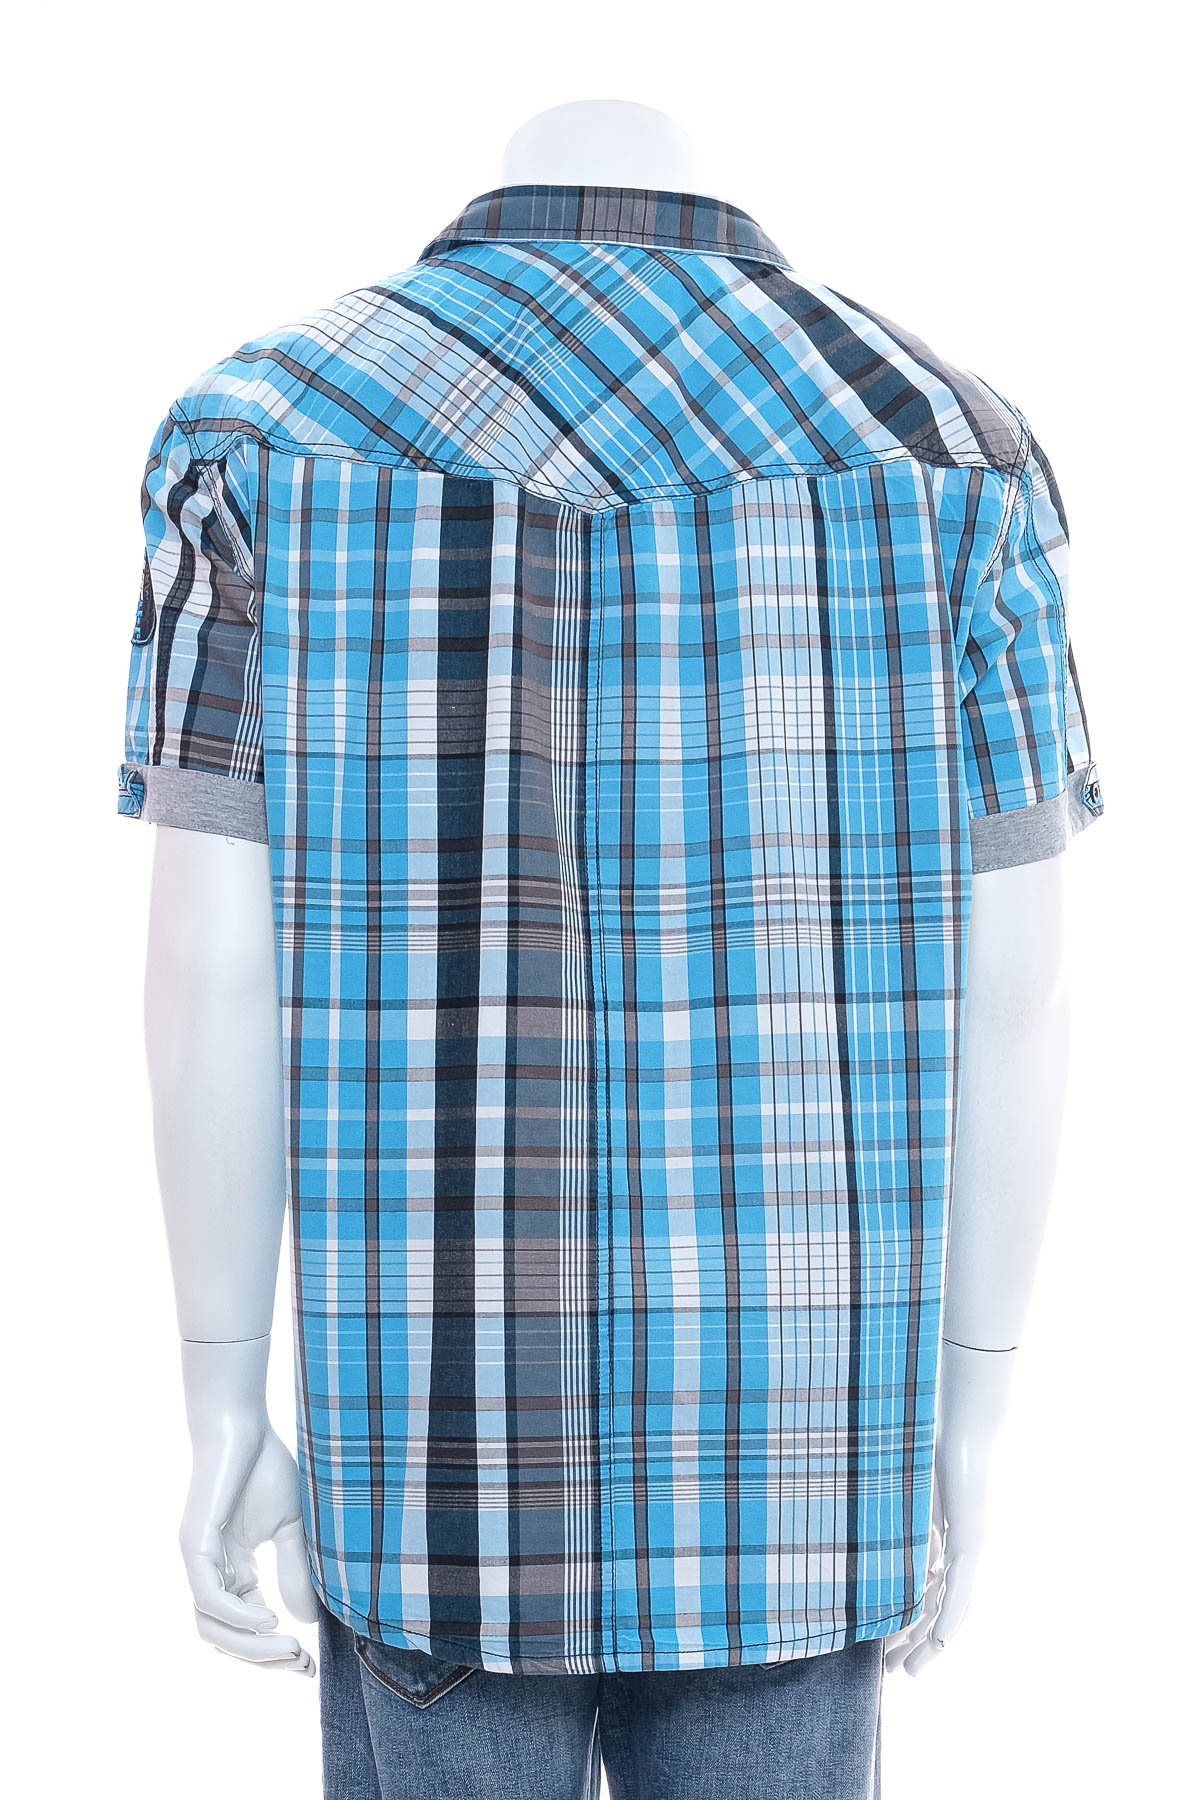 Ανδρικό πουκάμισο - Area Sixty-Two - 1